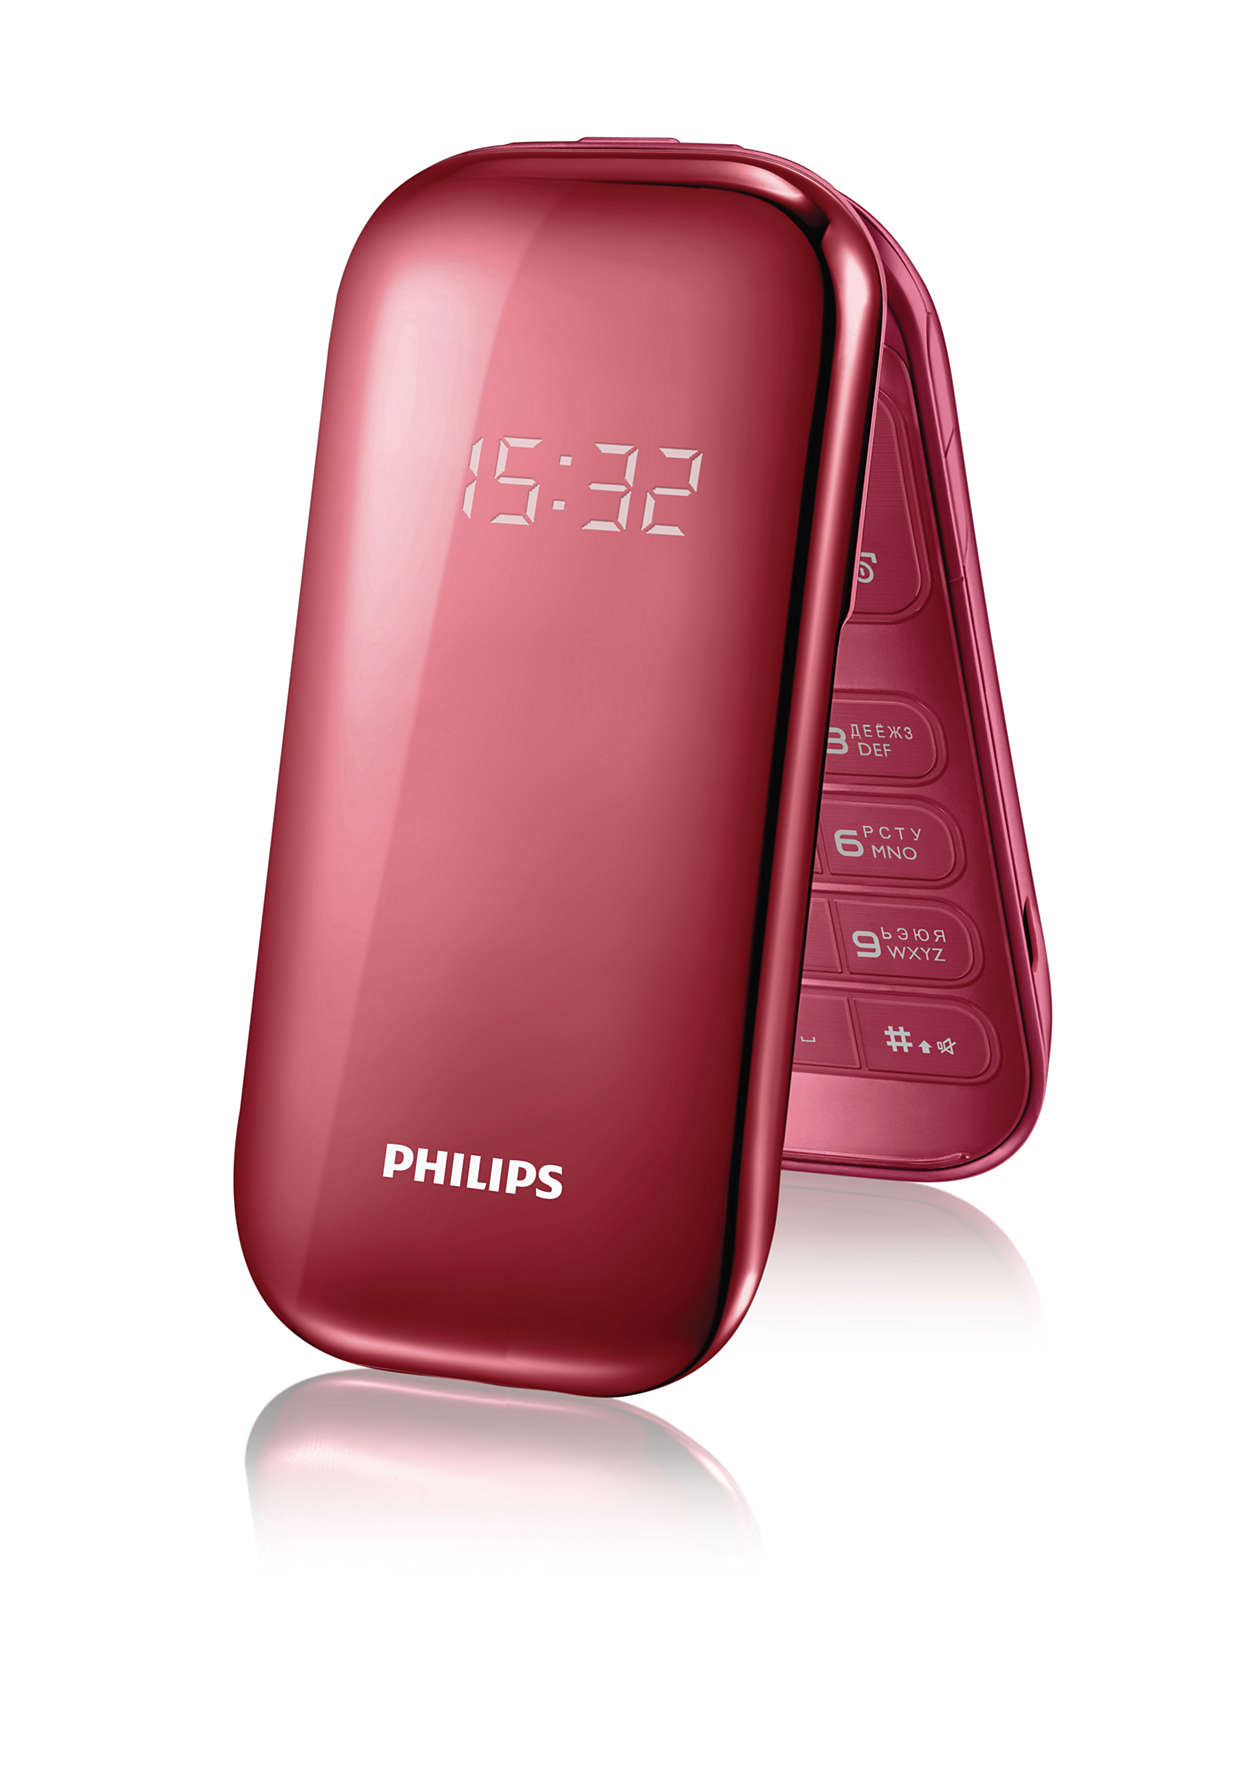 Телефон philips раскладушка. Philips e320 красный. Мобильный телефон Philips e320. Кнопочный сотовый Филипс раскладушка. Philips e225.